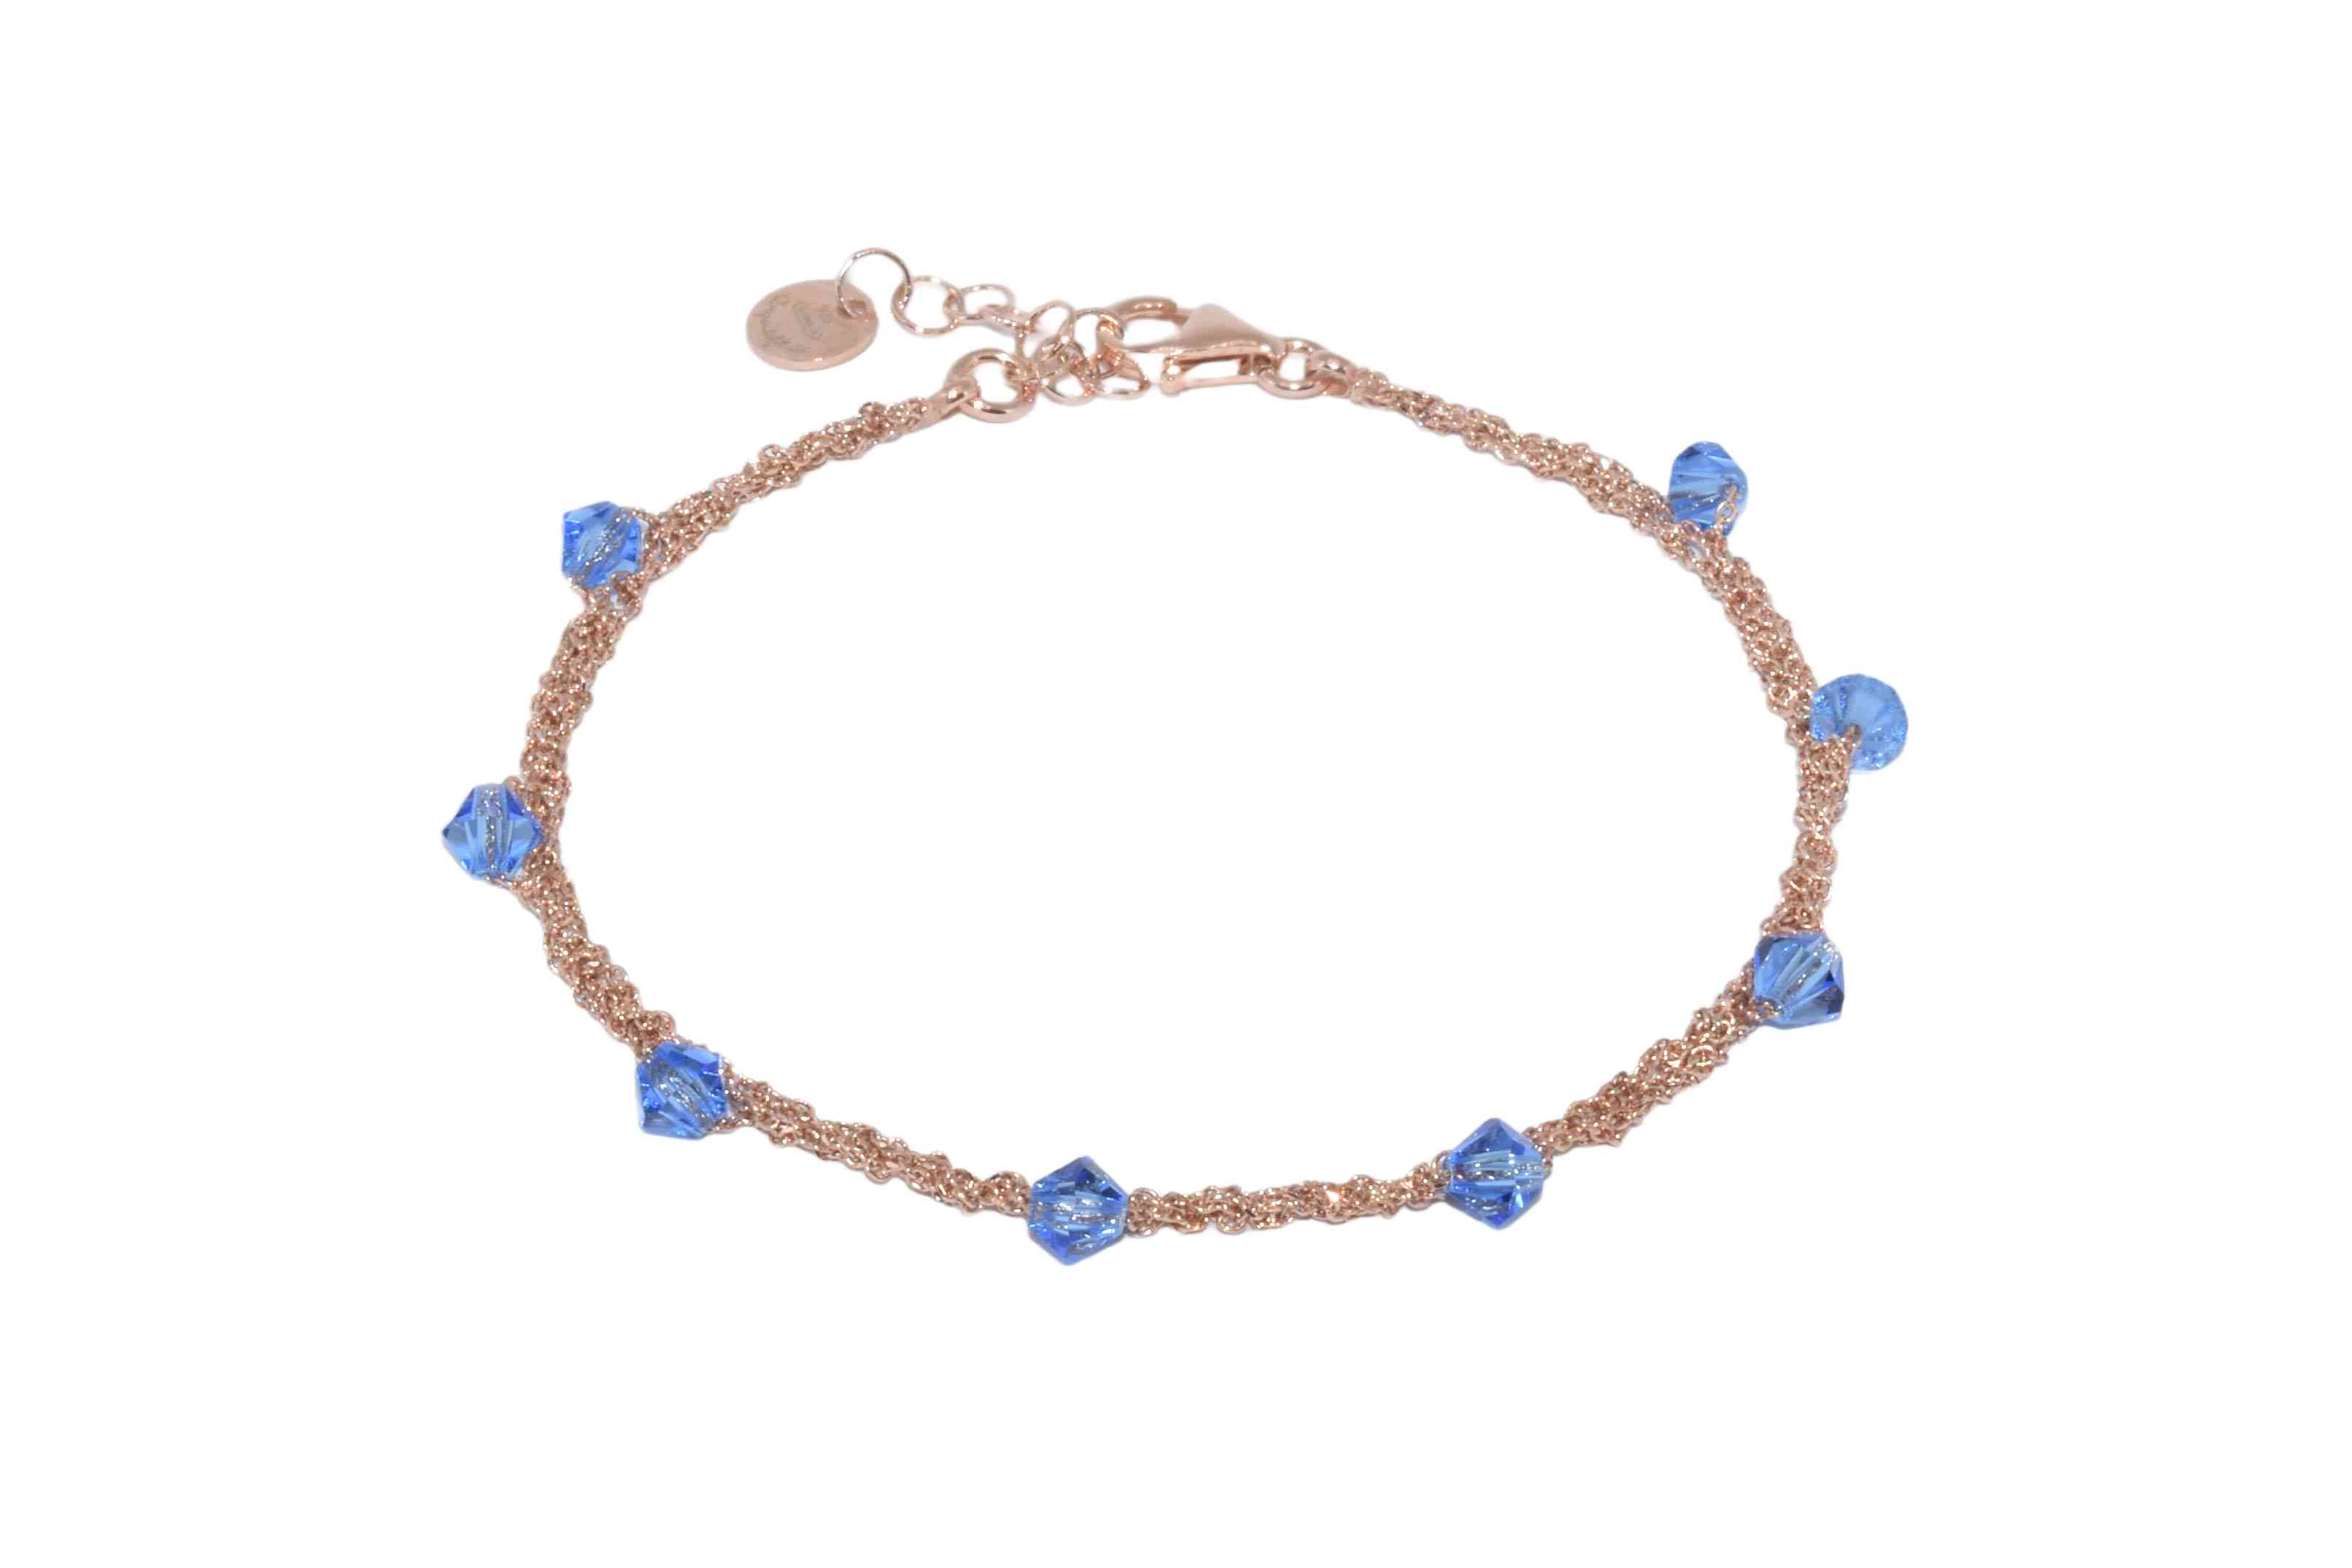 Bracciale-Uncinetto-rombi-blu-Argentofilato-in-argento-925-oro-rosa